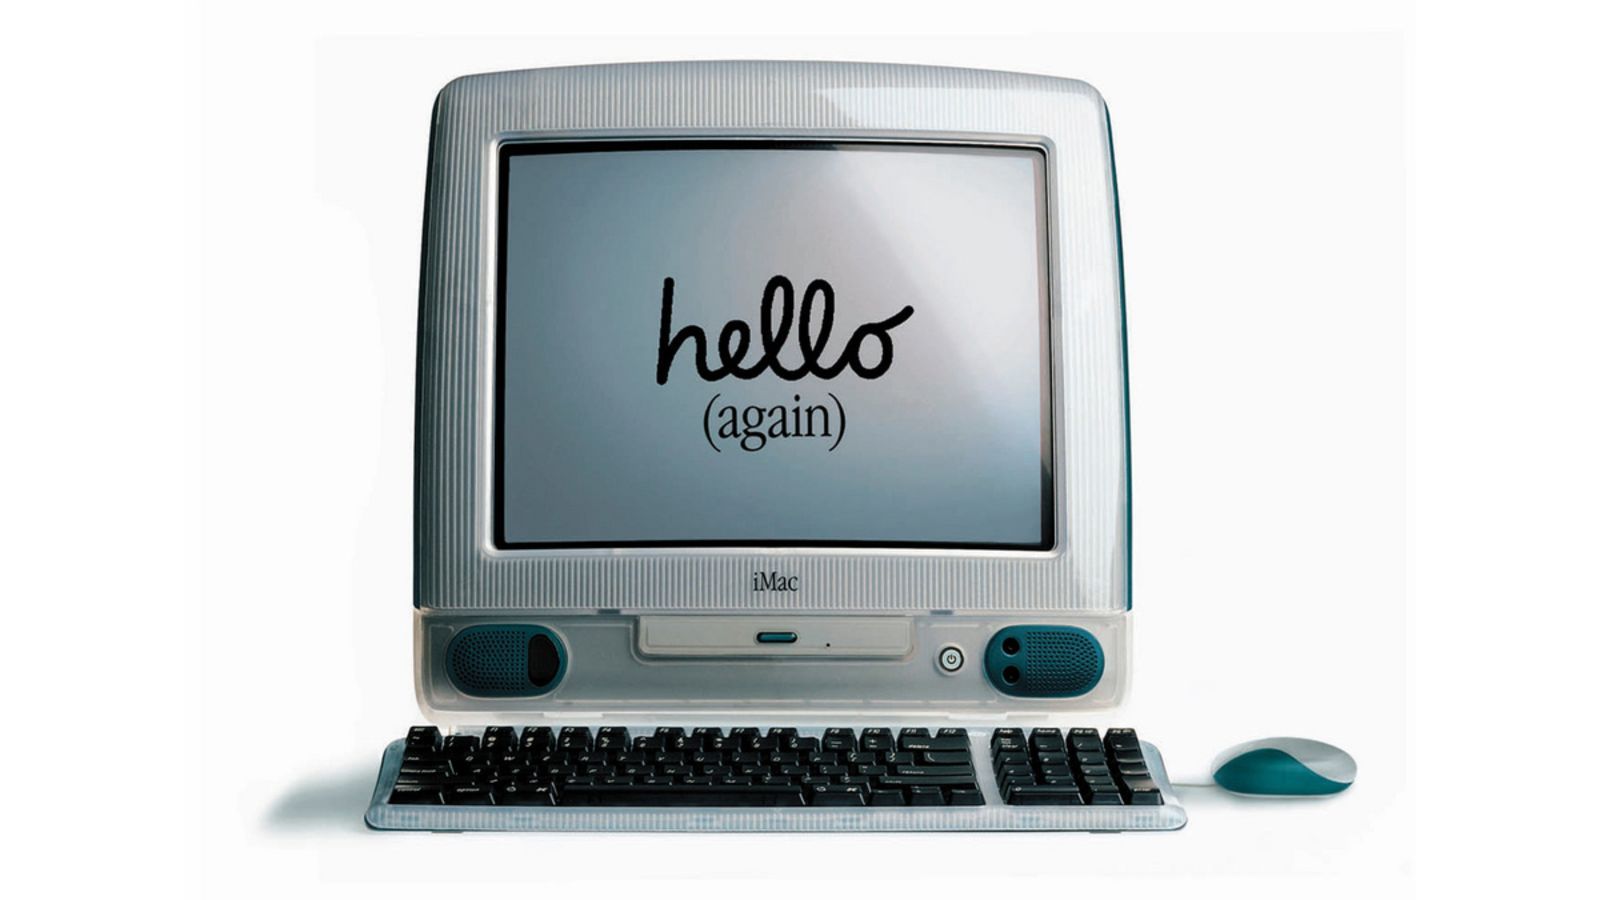 Этот день в истории Apple: Стив Джобс демонстрирует яркий и оригинальный iMac G3